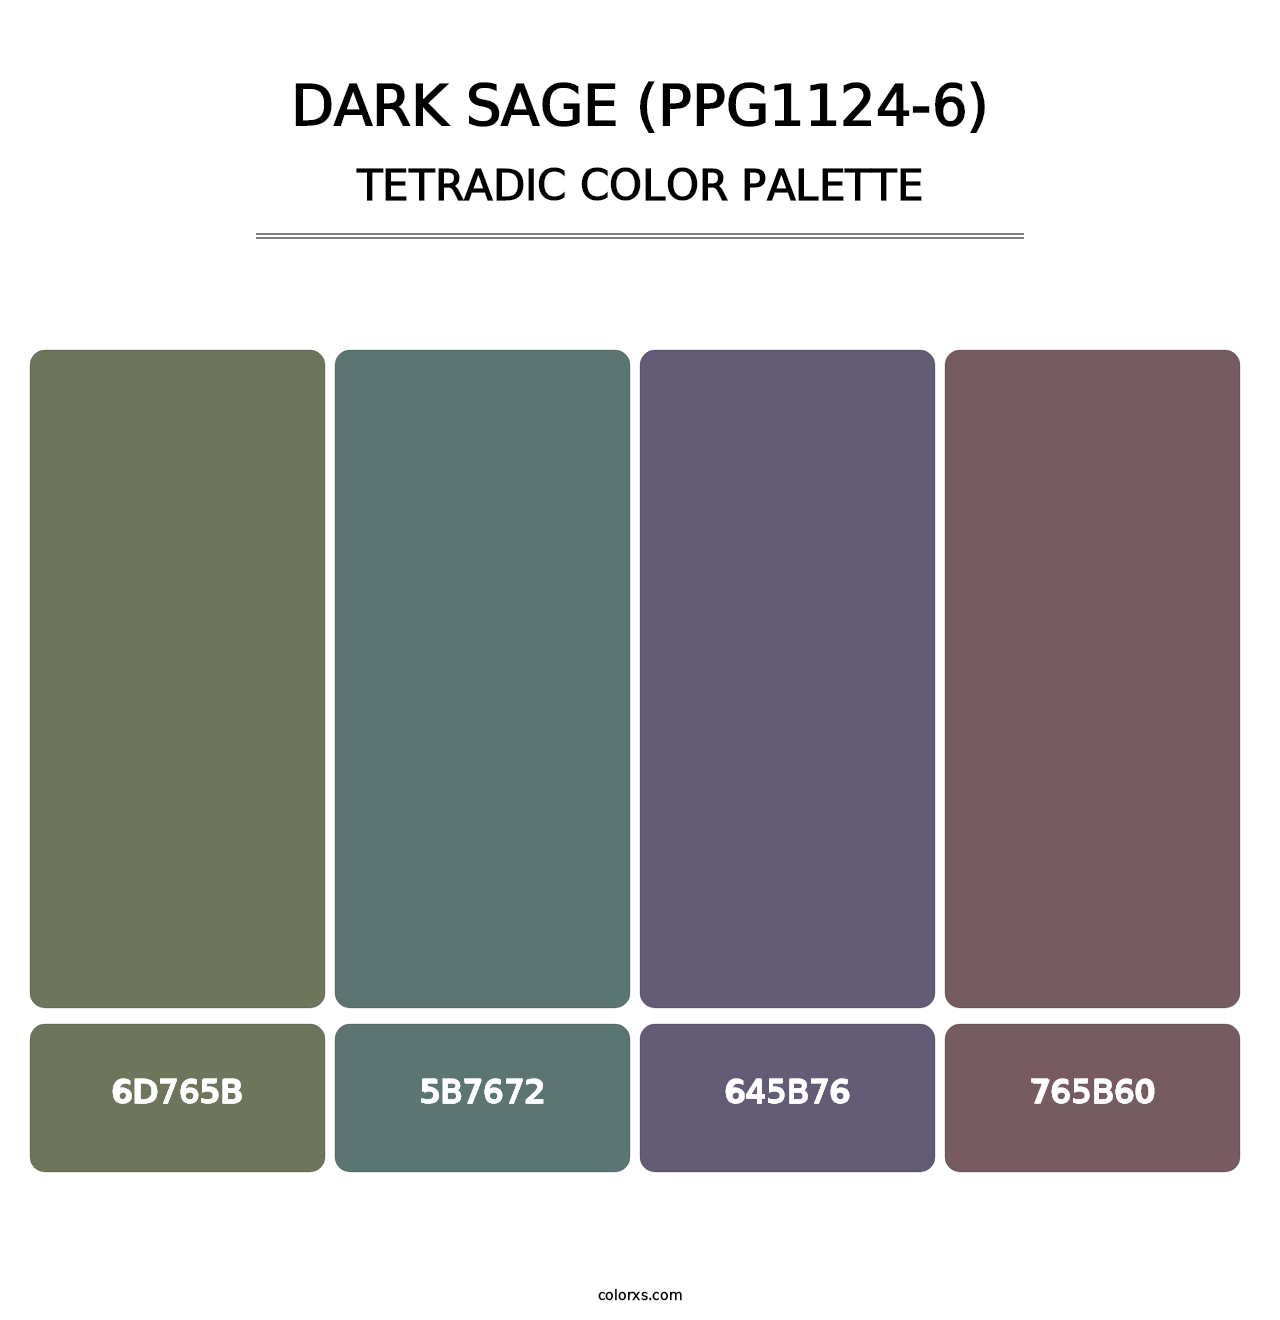 Dark Sage (PPG1124-6) - Tetradic Color Palette